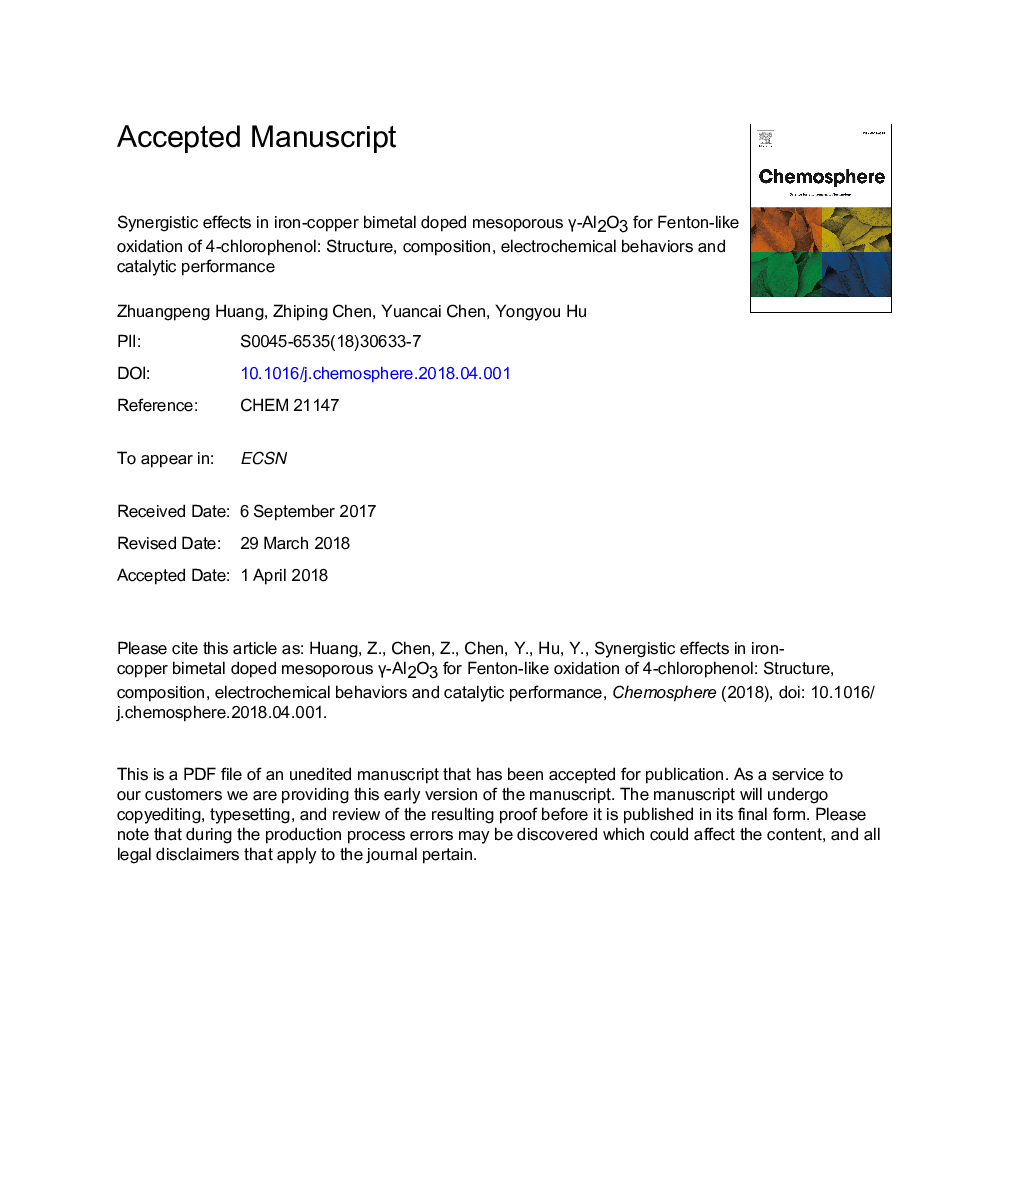 اثرات همزمانی در اکسیداسیون فنتون 4-کلروفنل در ساختار، ترکیب، رفتار الکتروشیمیایی و عملکرد کاتالیزوری 